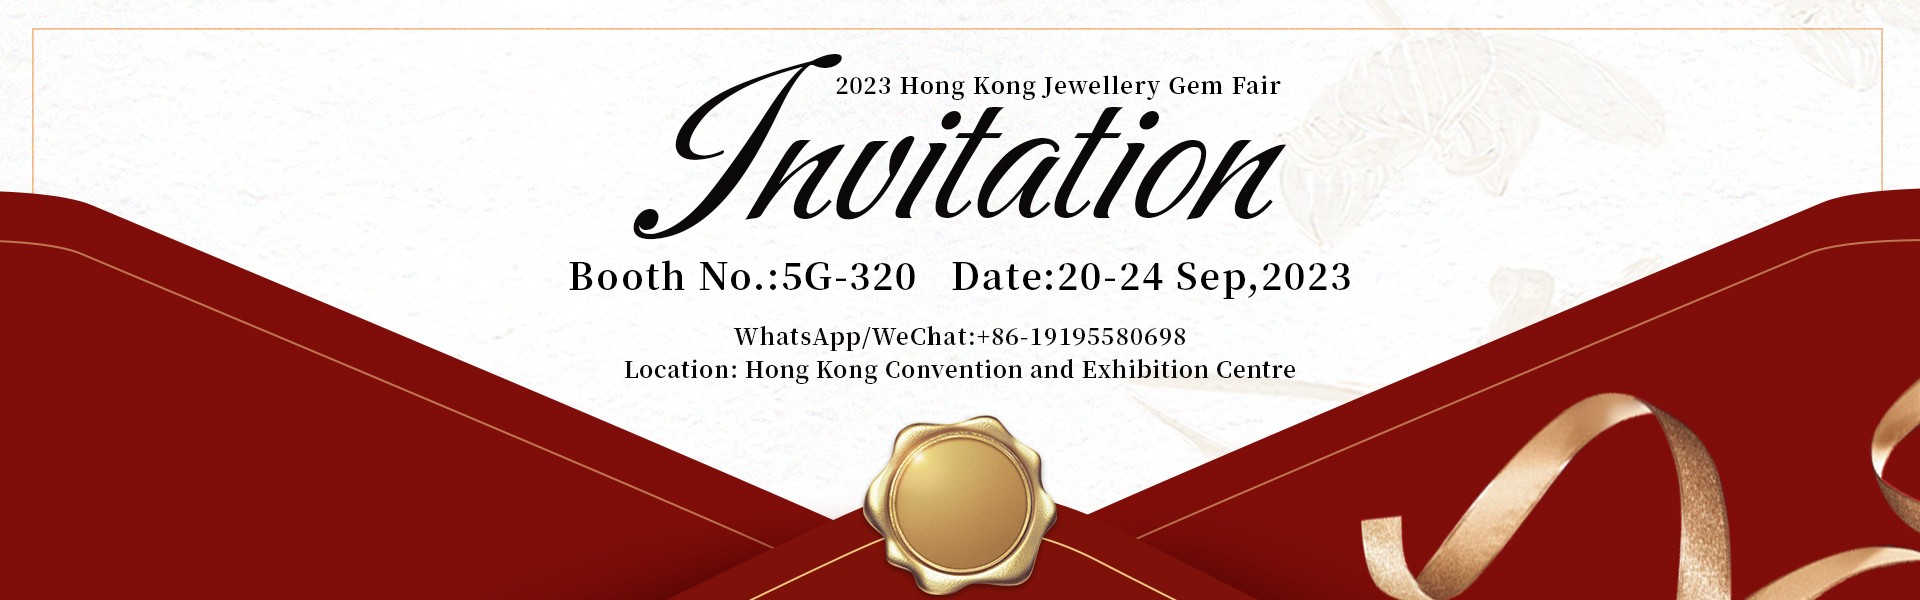 2023 Hong Kong Jewellery Gem Fair